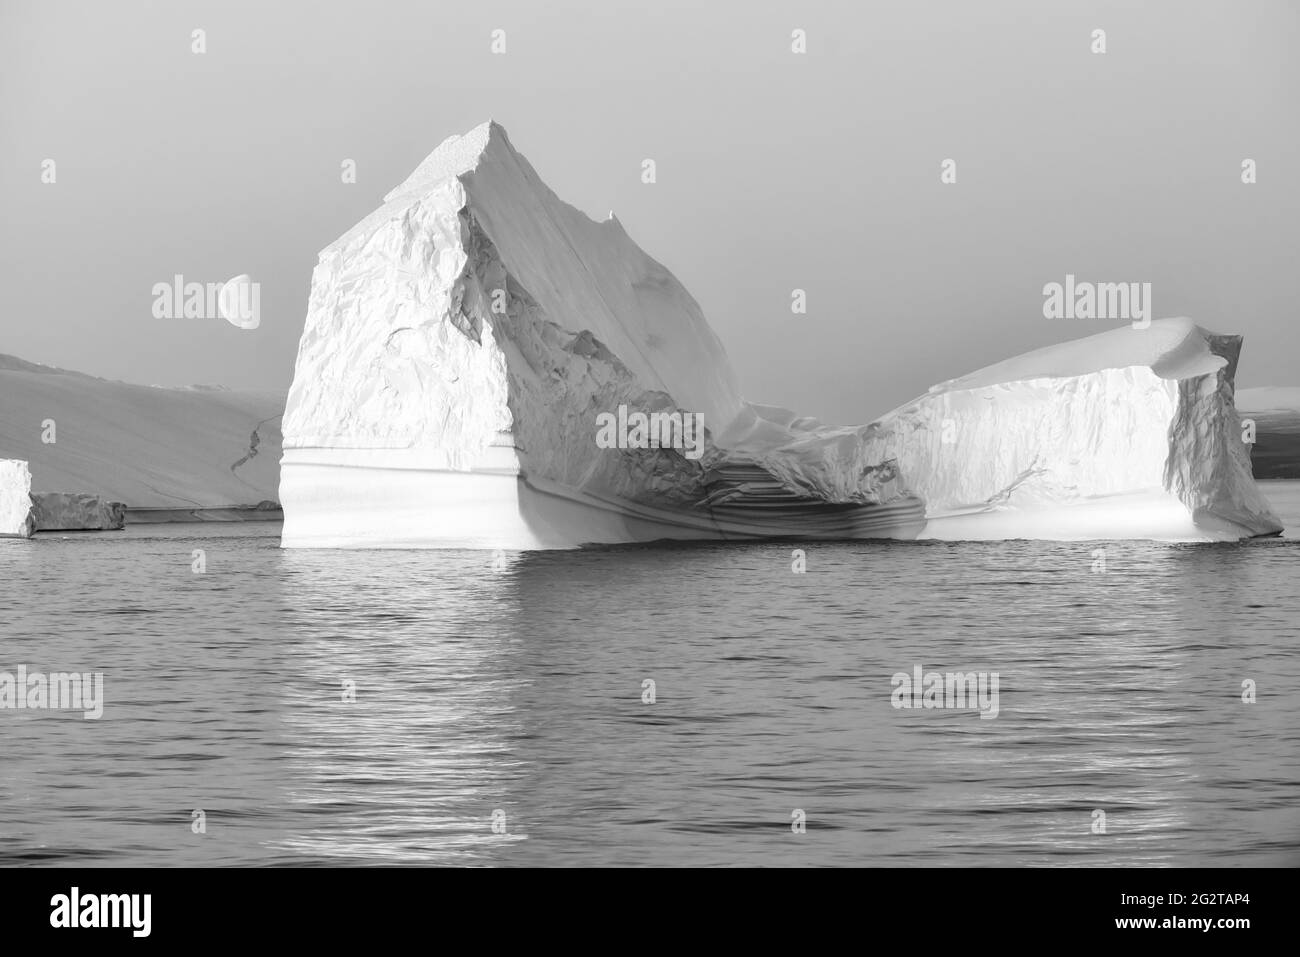 Foto in bianco e nero di un enorme iceberg galleggiante al tramonto con la luna sulla sinistra. Scoresby Sund, Kangertittivaq, Groenlandia, Danimarca Foto Stock